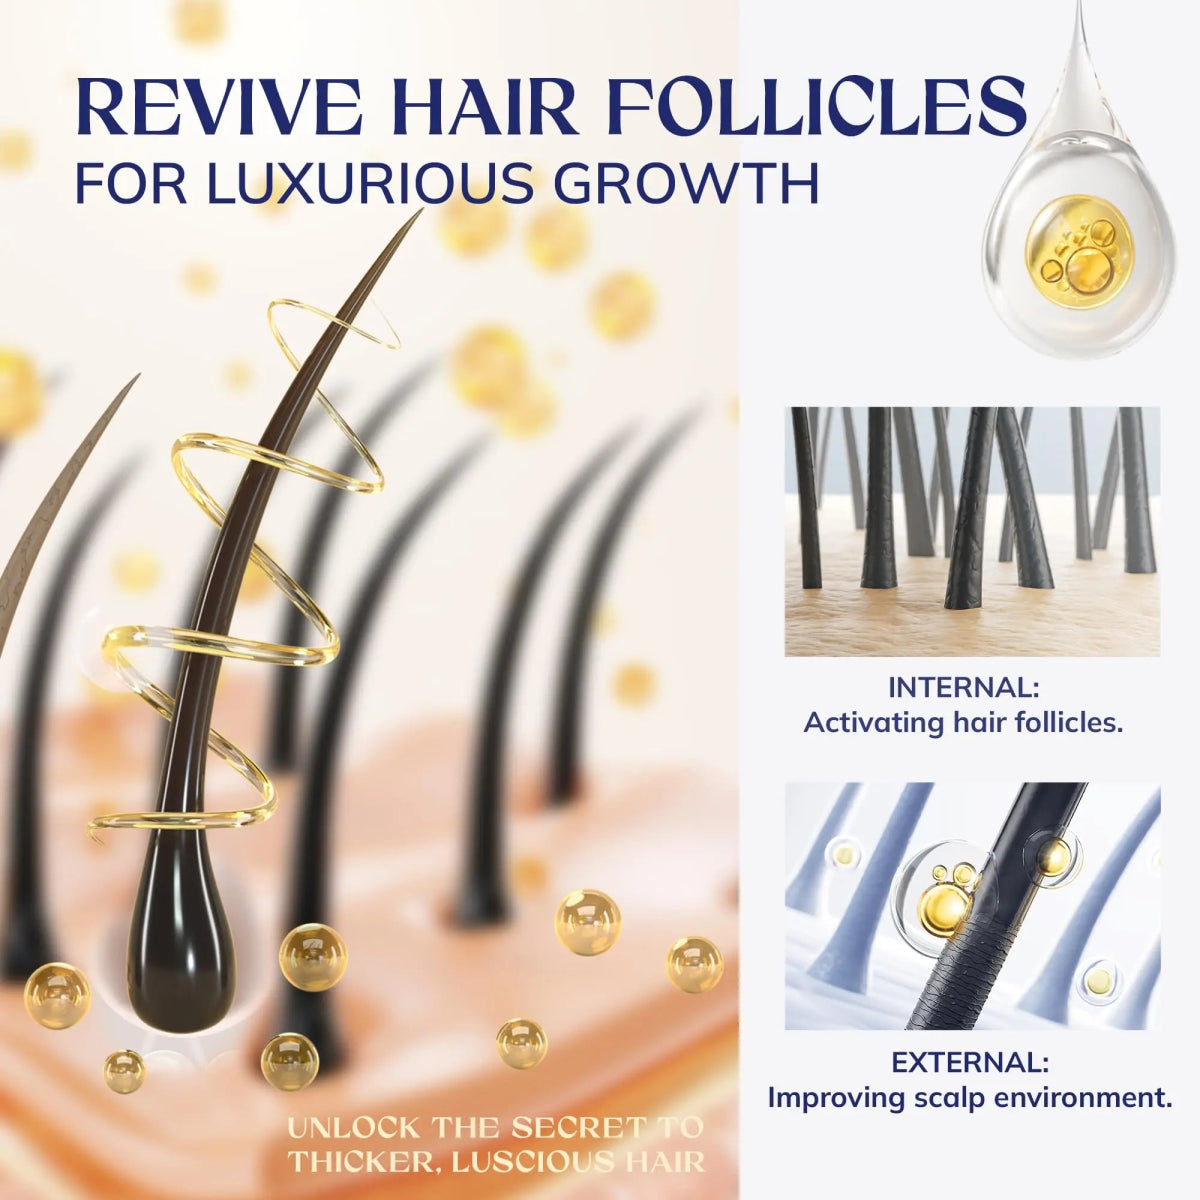 Hair Growth Rosemary Oil - LightsBetter